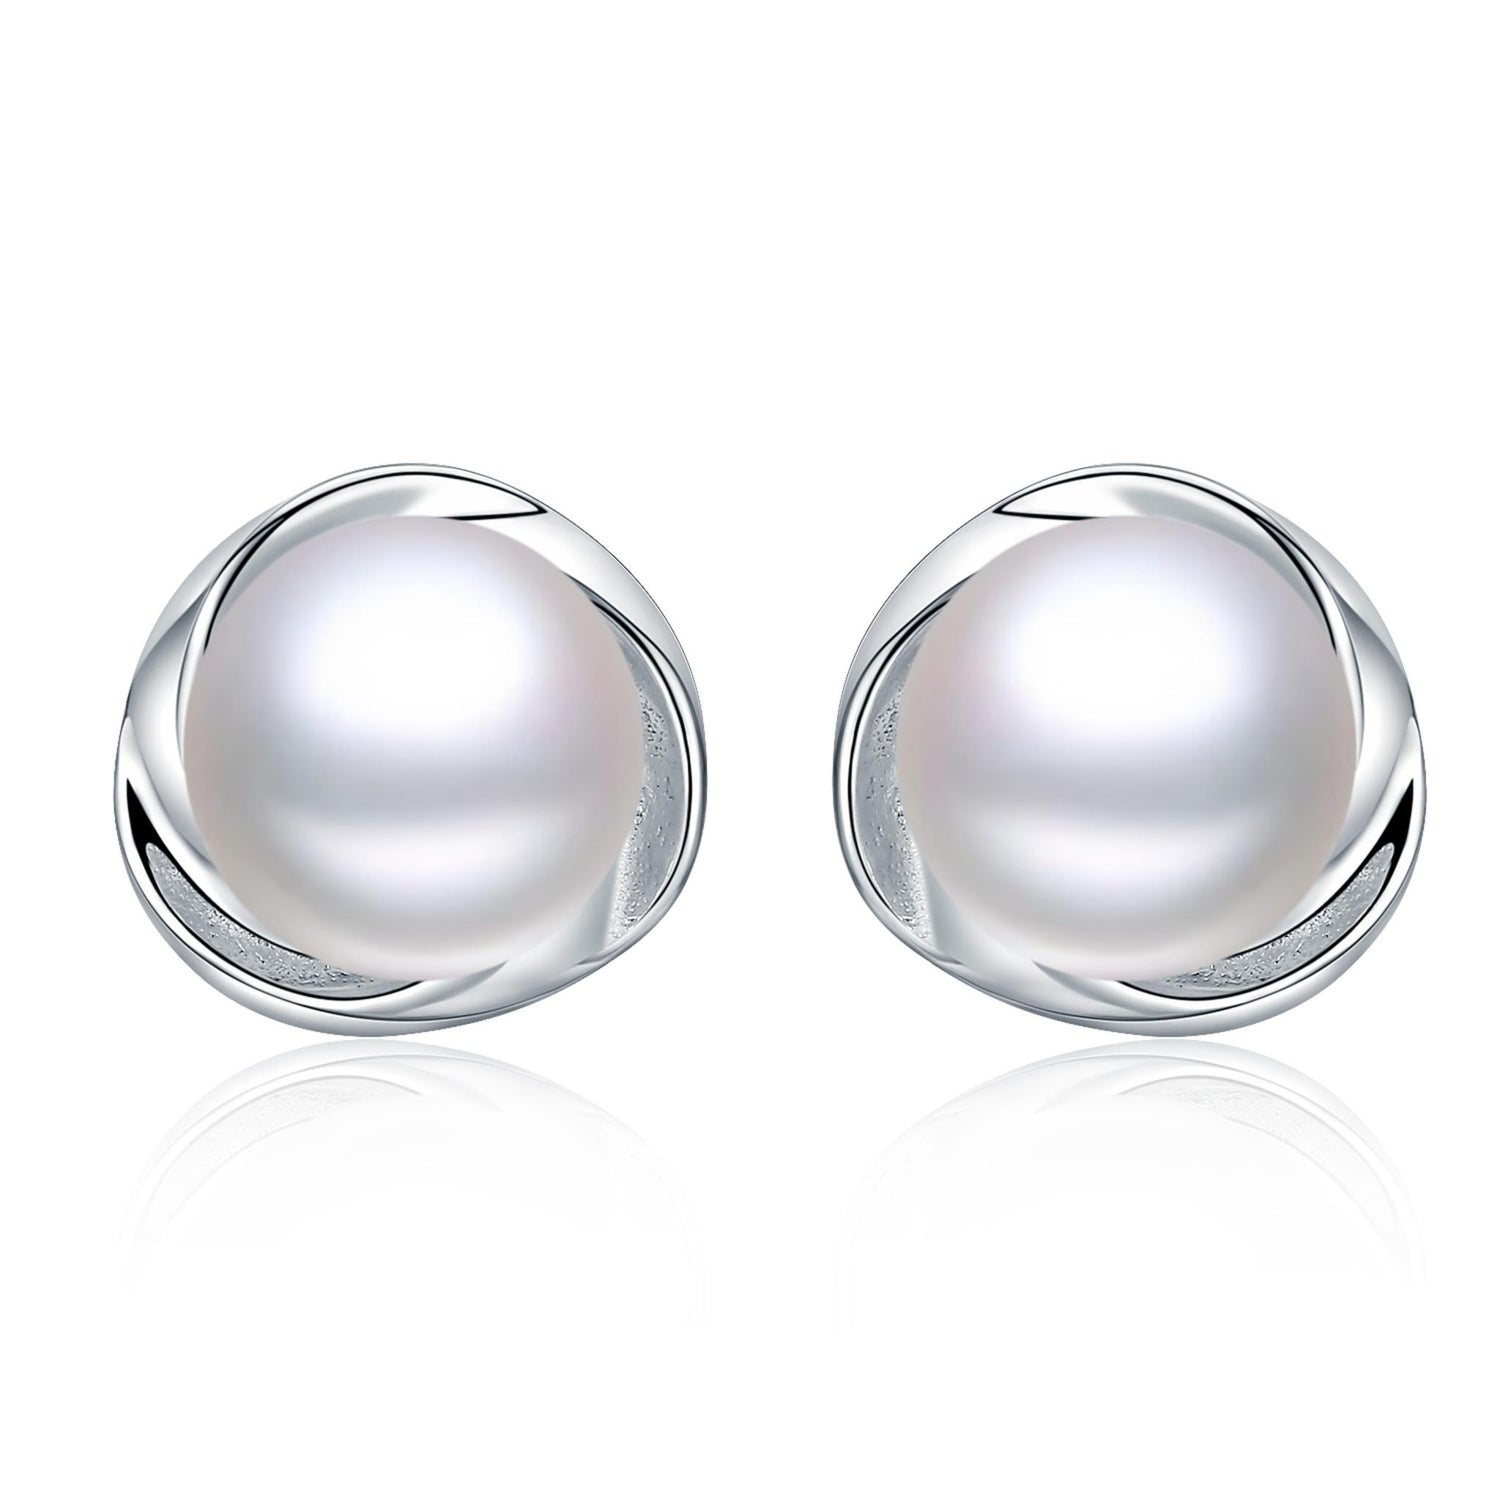 Blooming flower pearl earrings - Timeless Pearl